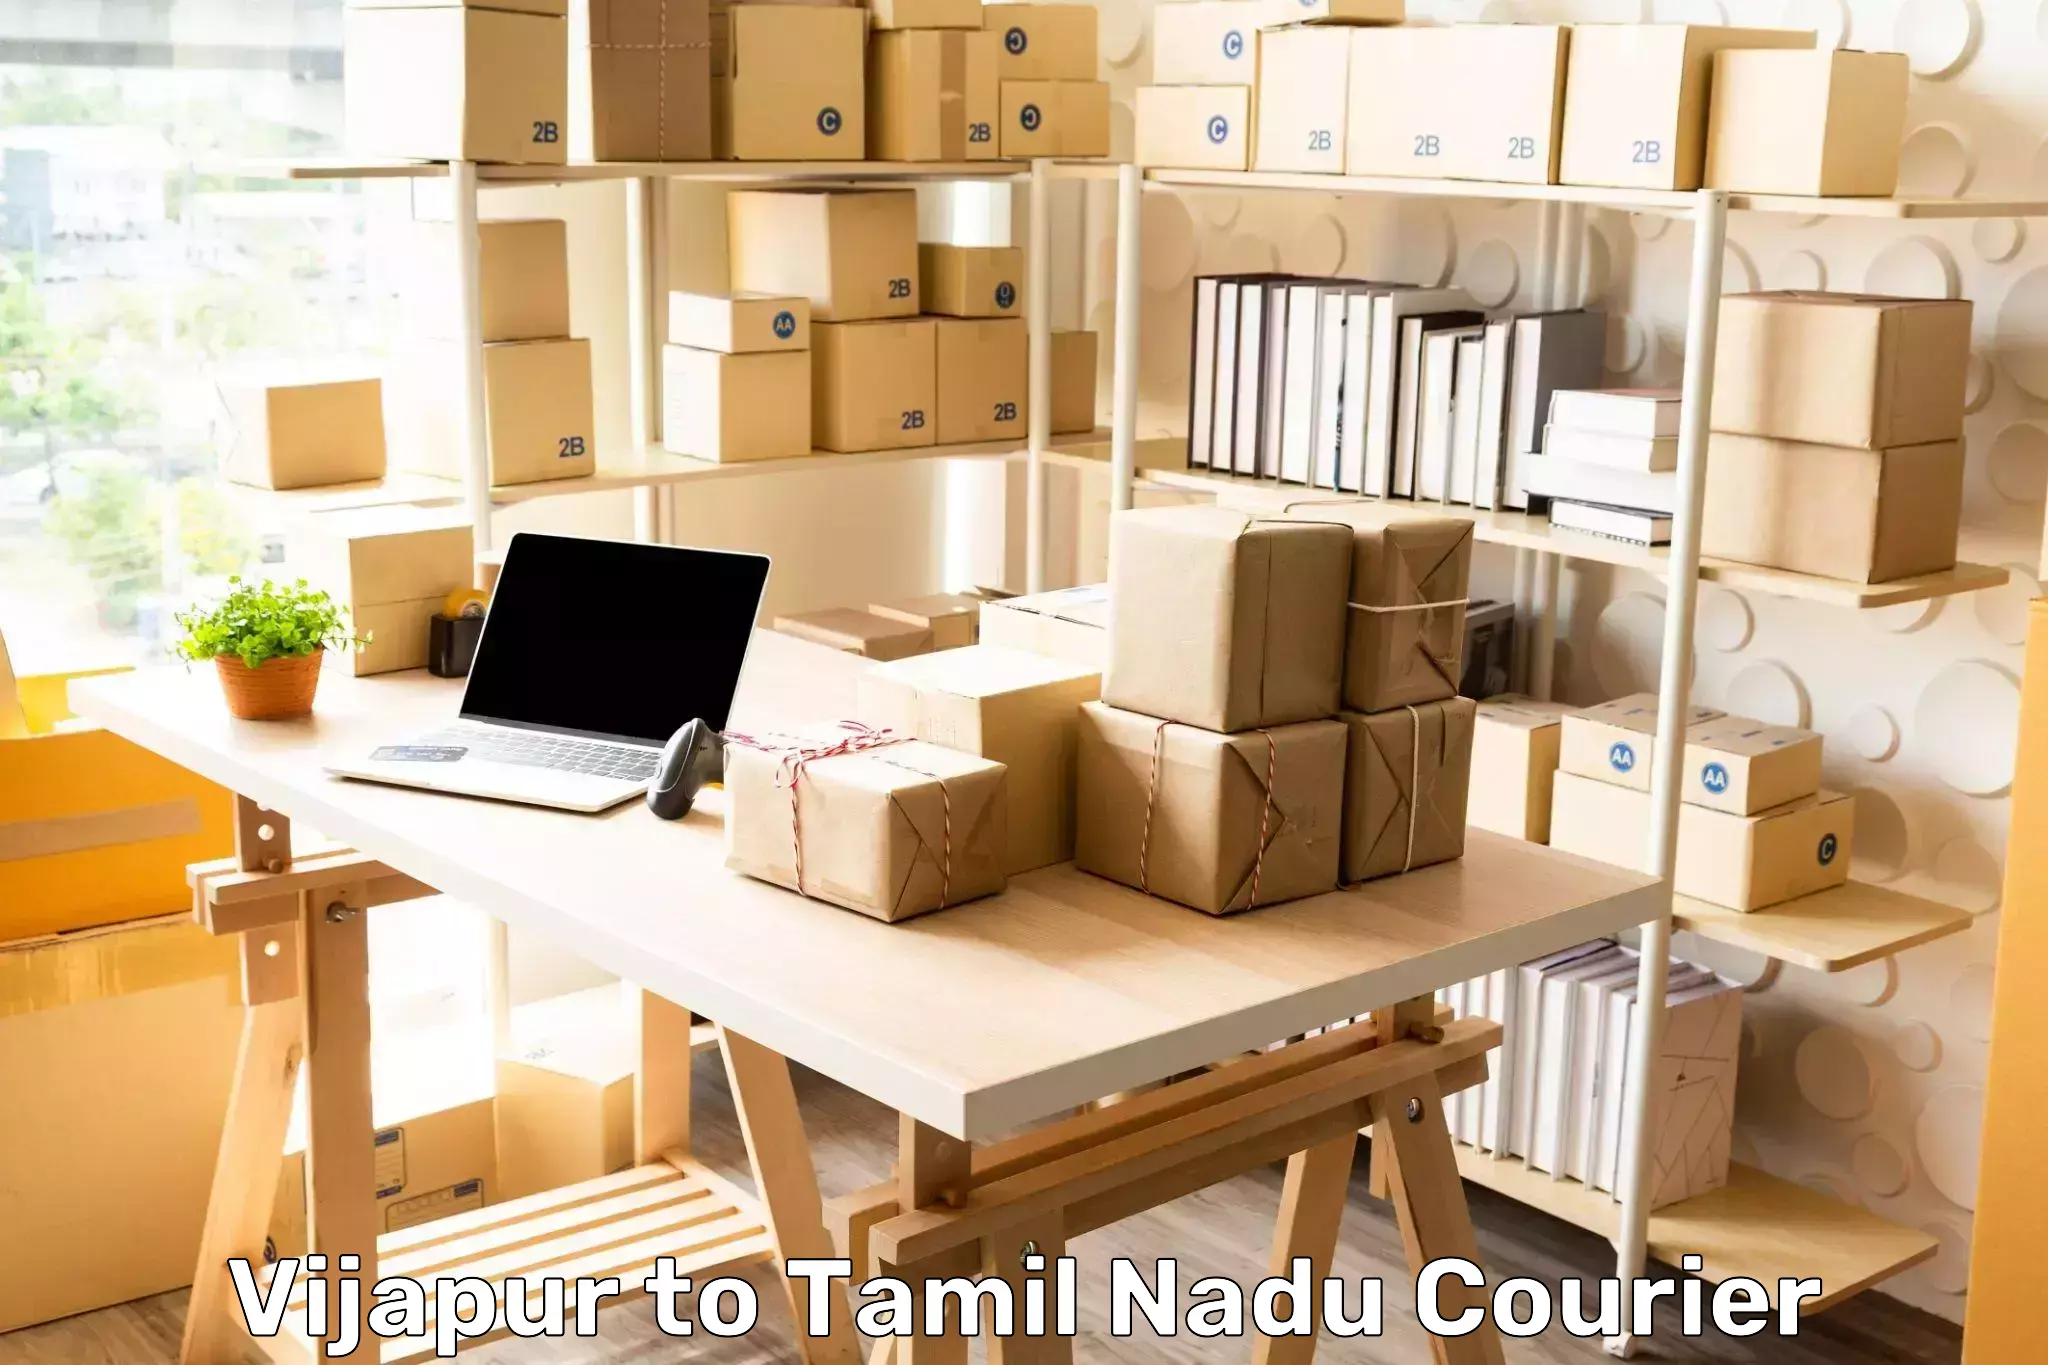 Digital shipping tools in Vijapur to Tamil Nadu